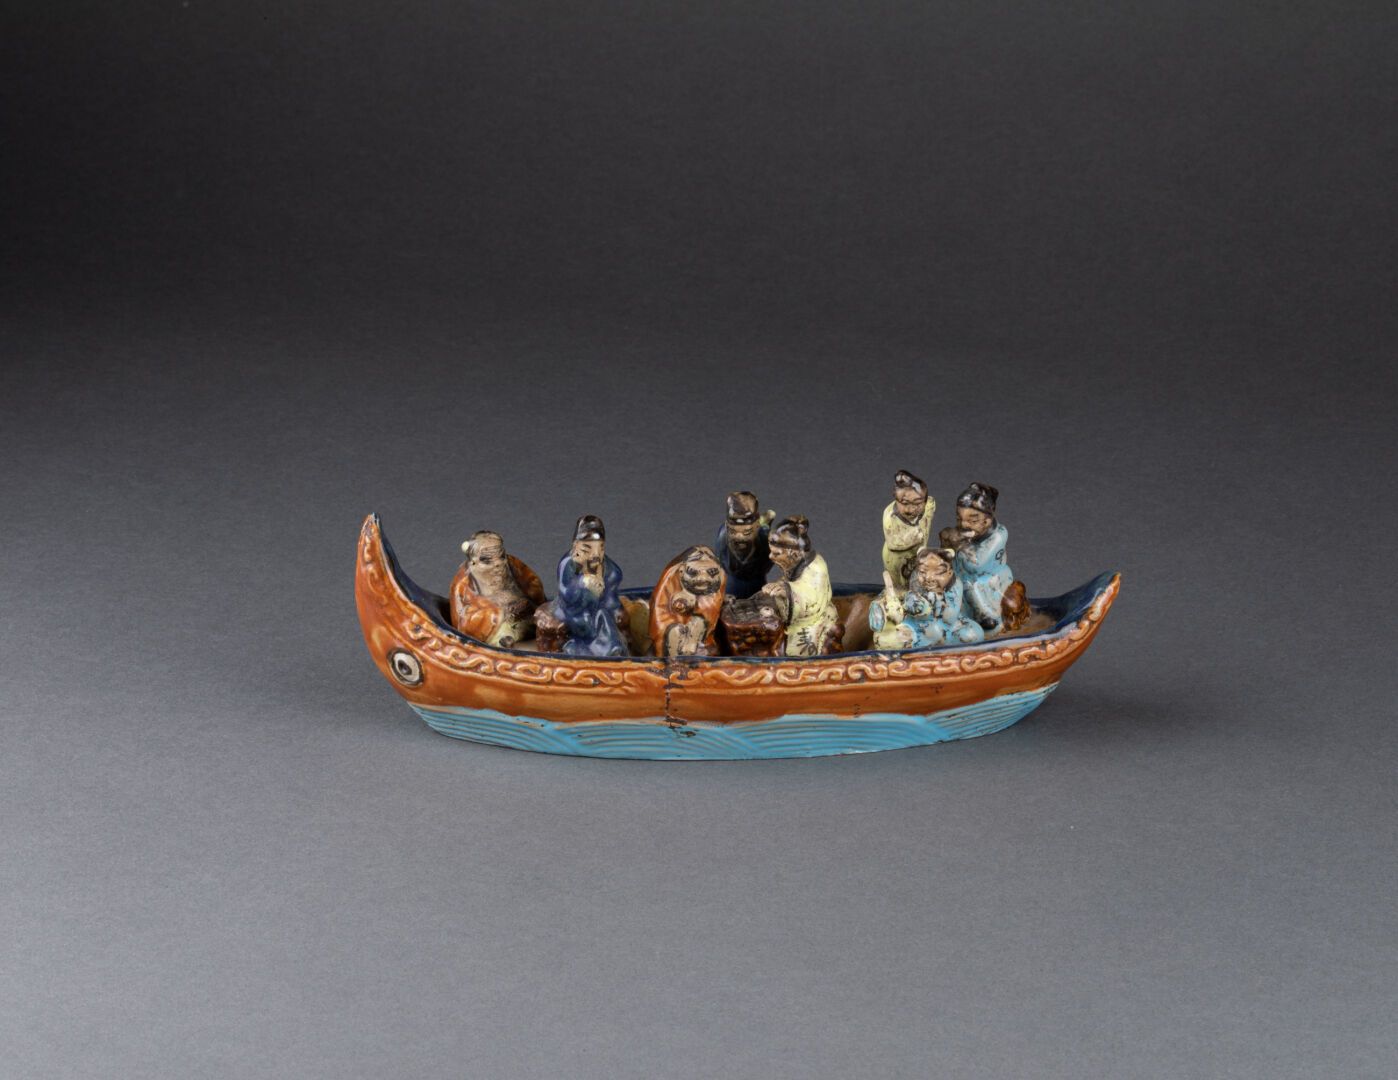 CHINE - XIXe siècle Les huit immortels sur une barque 
Grès à couverte brune, bl&hellip;